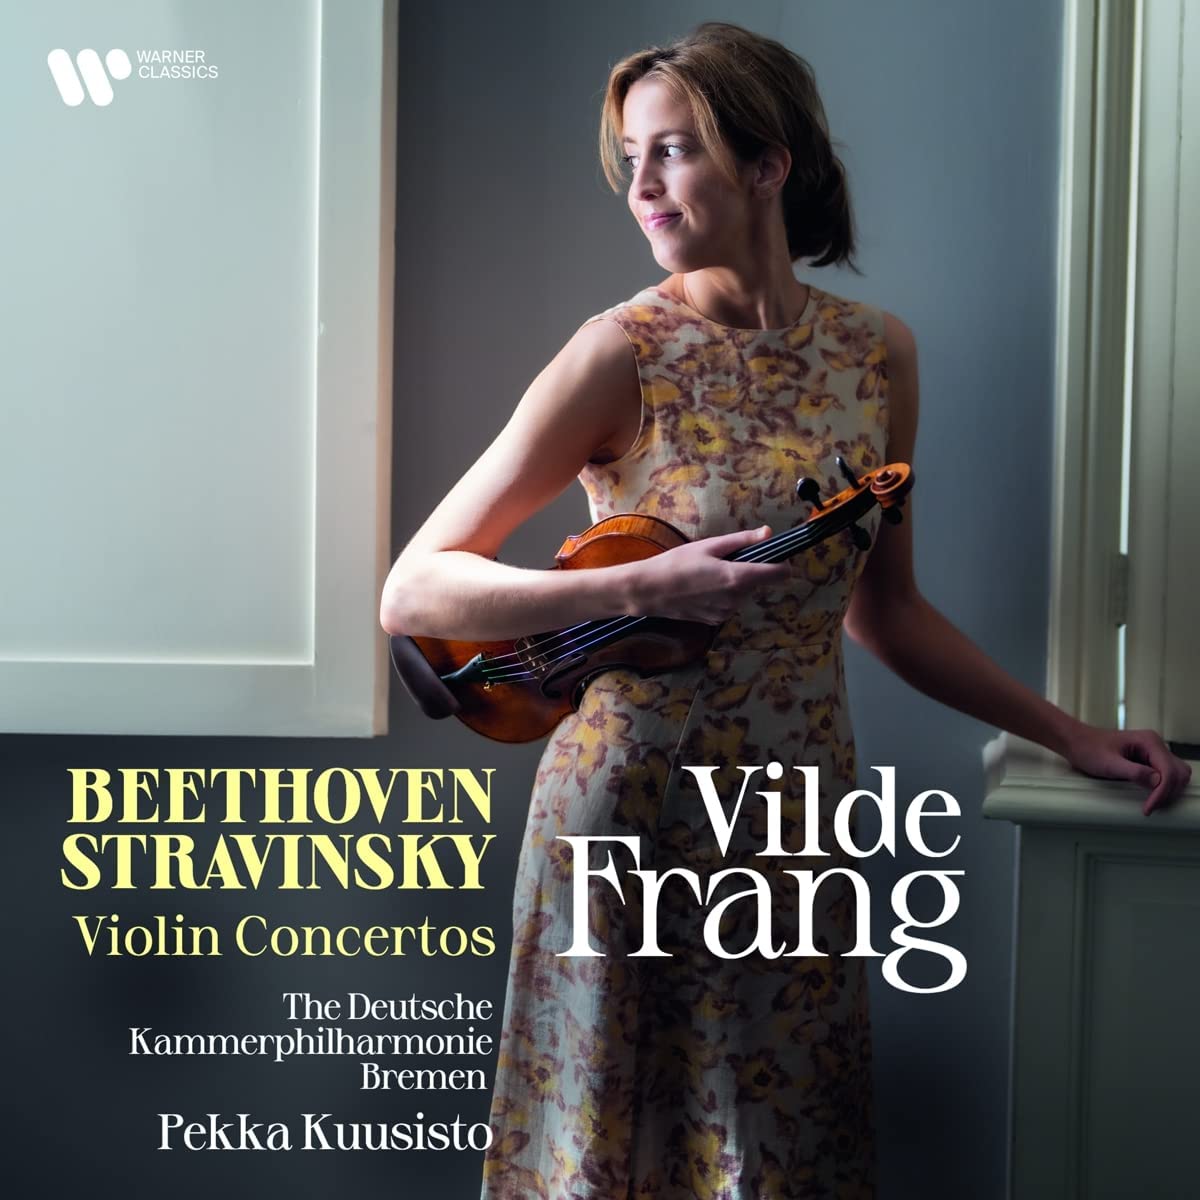 Beethoven & Stravinsky: Violin Concertos | Vilde Frang image